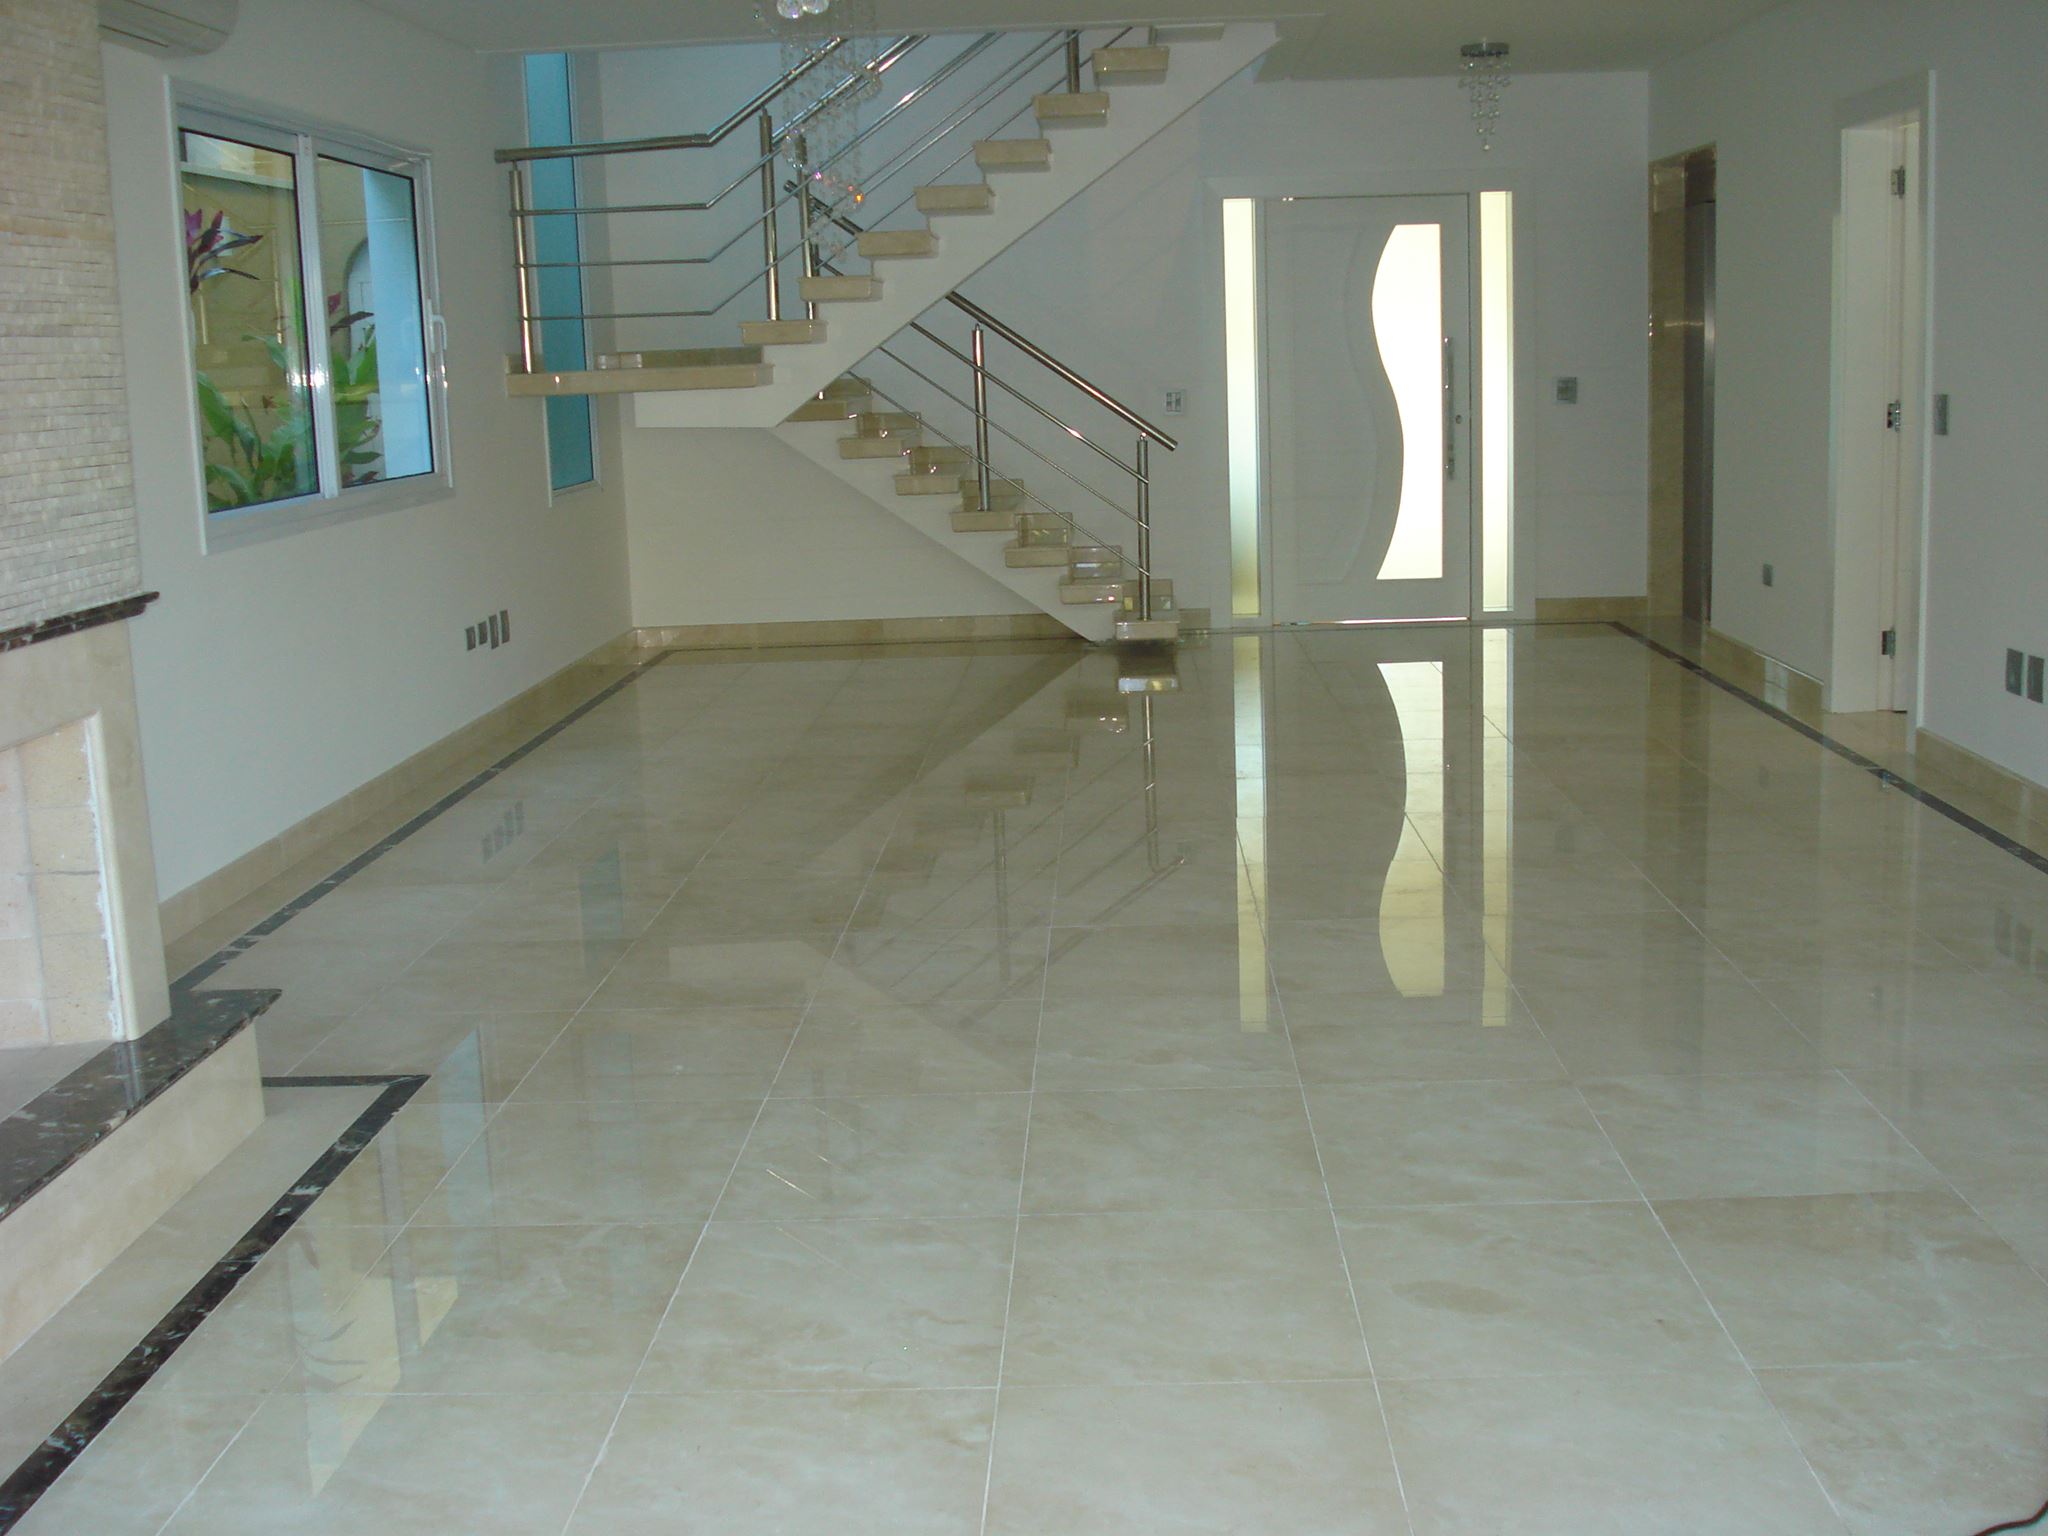 piso mármore importado, lareira, rodapé, escada